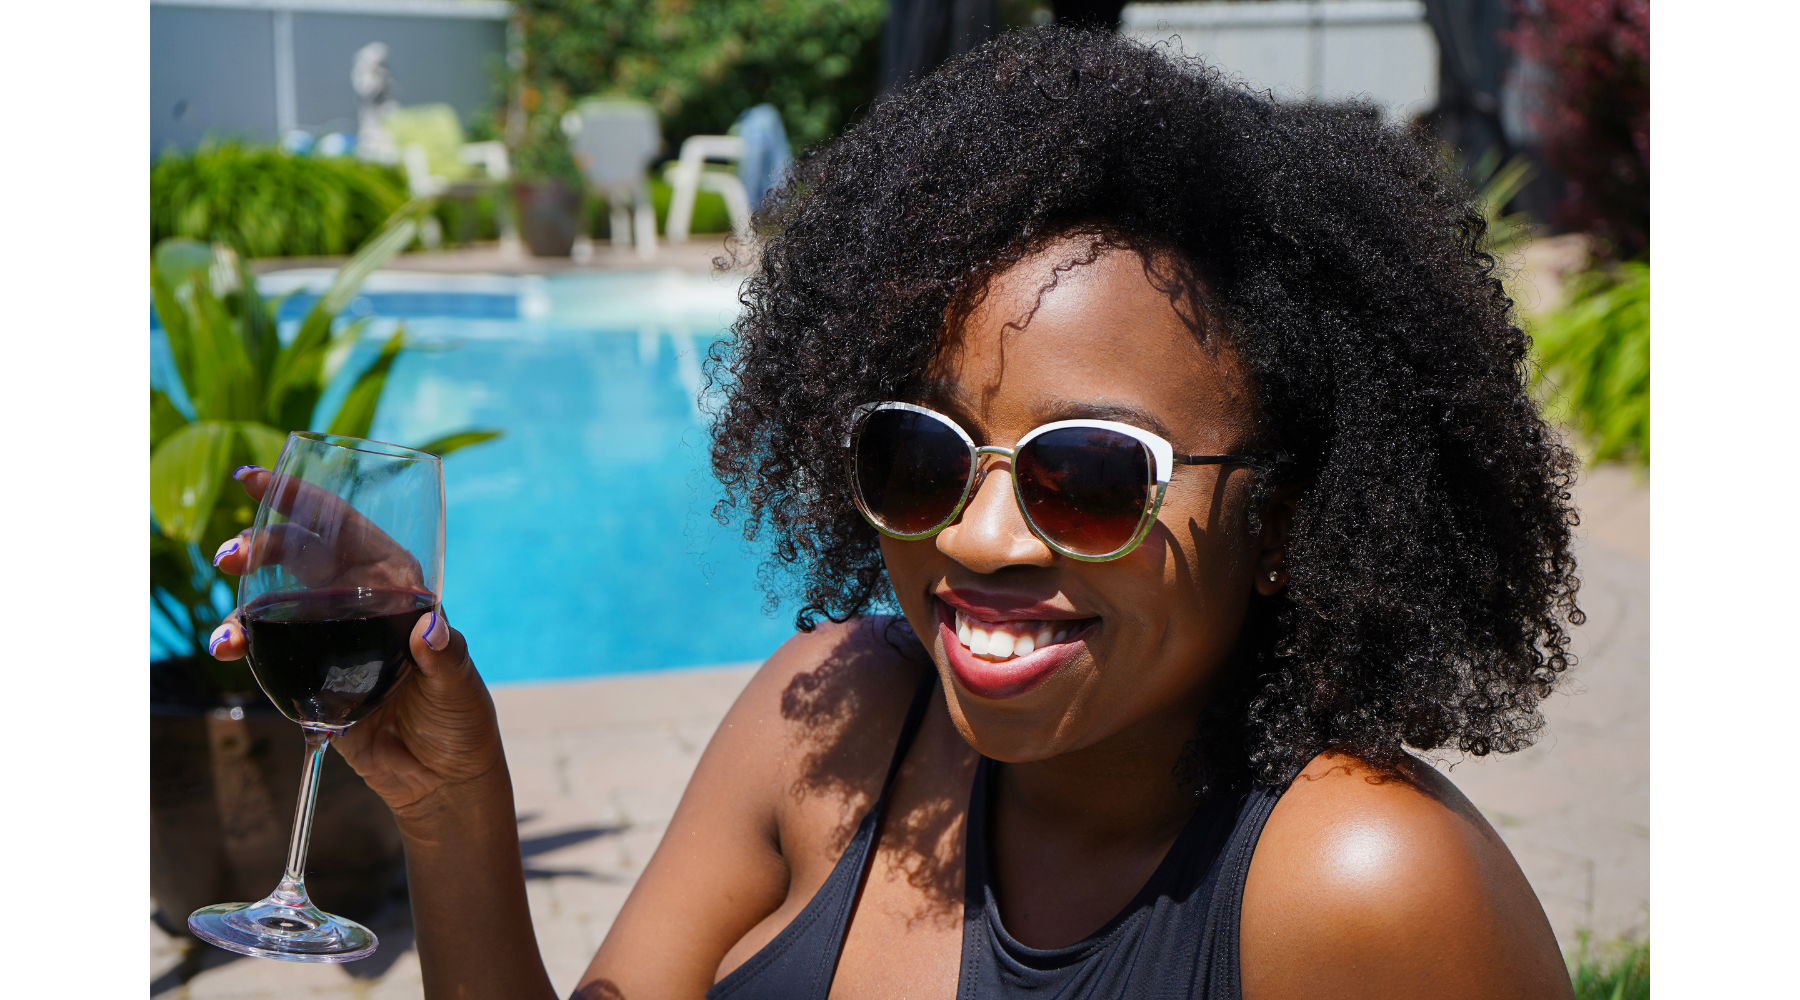 Comment profiter au maximum de son afro durant l'été?